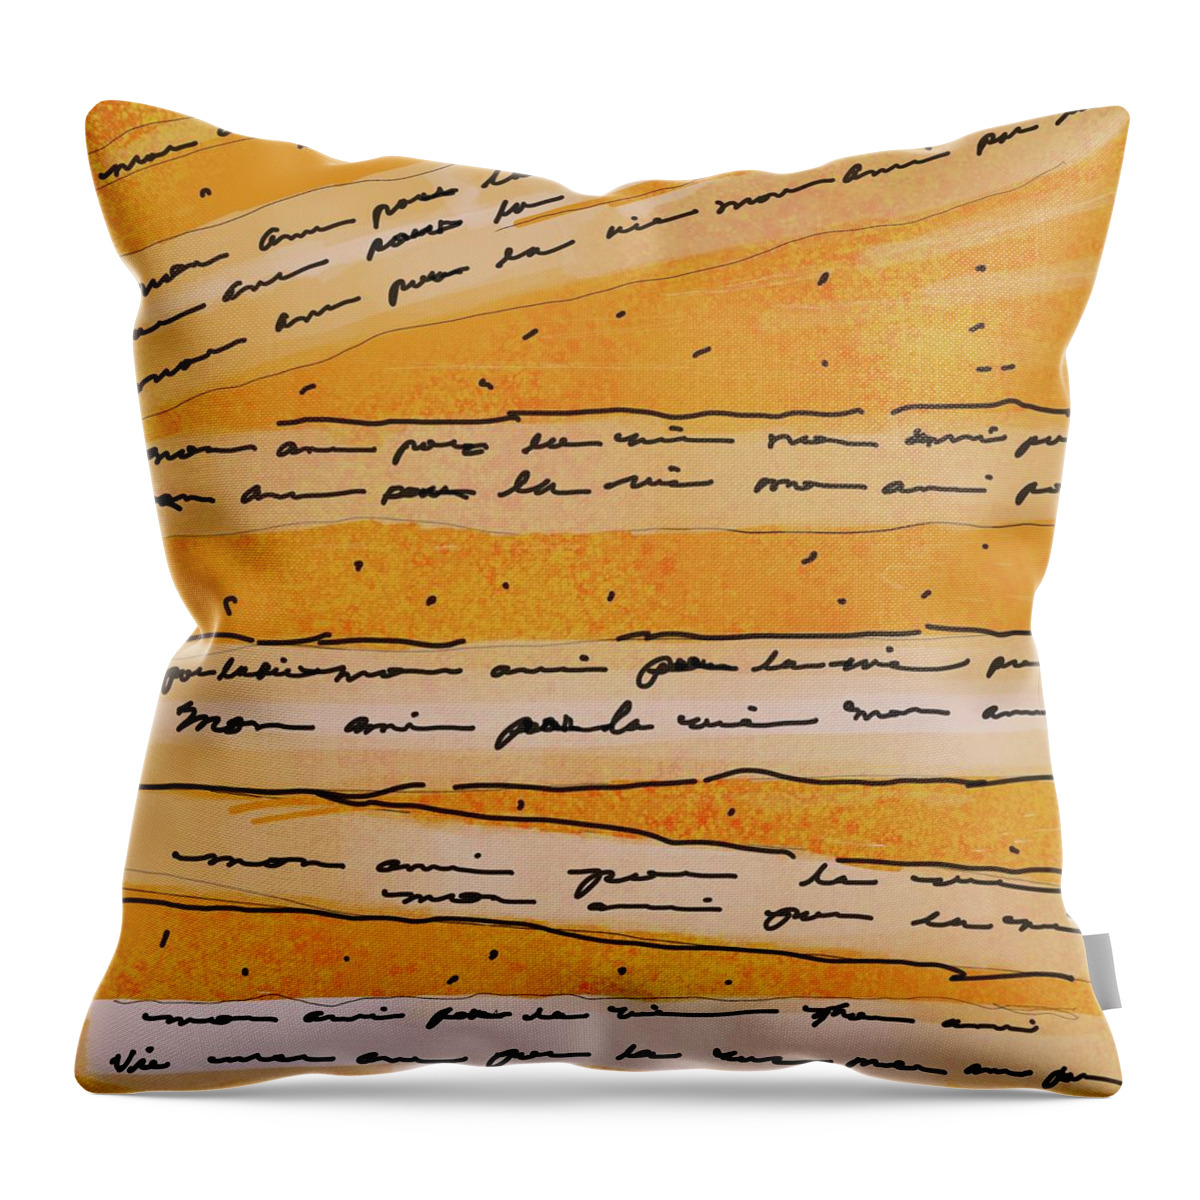 Mon Ami Pour La Vie Throw Pillow featuring the digital art Mon Ami pour La Vie by Juliette Becker